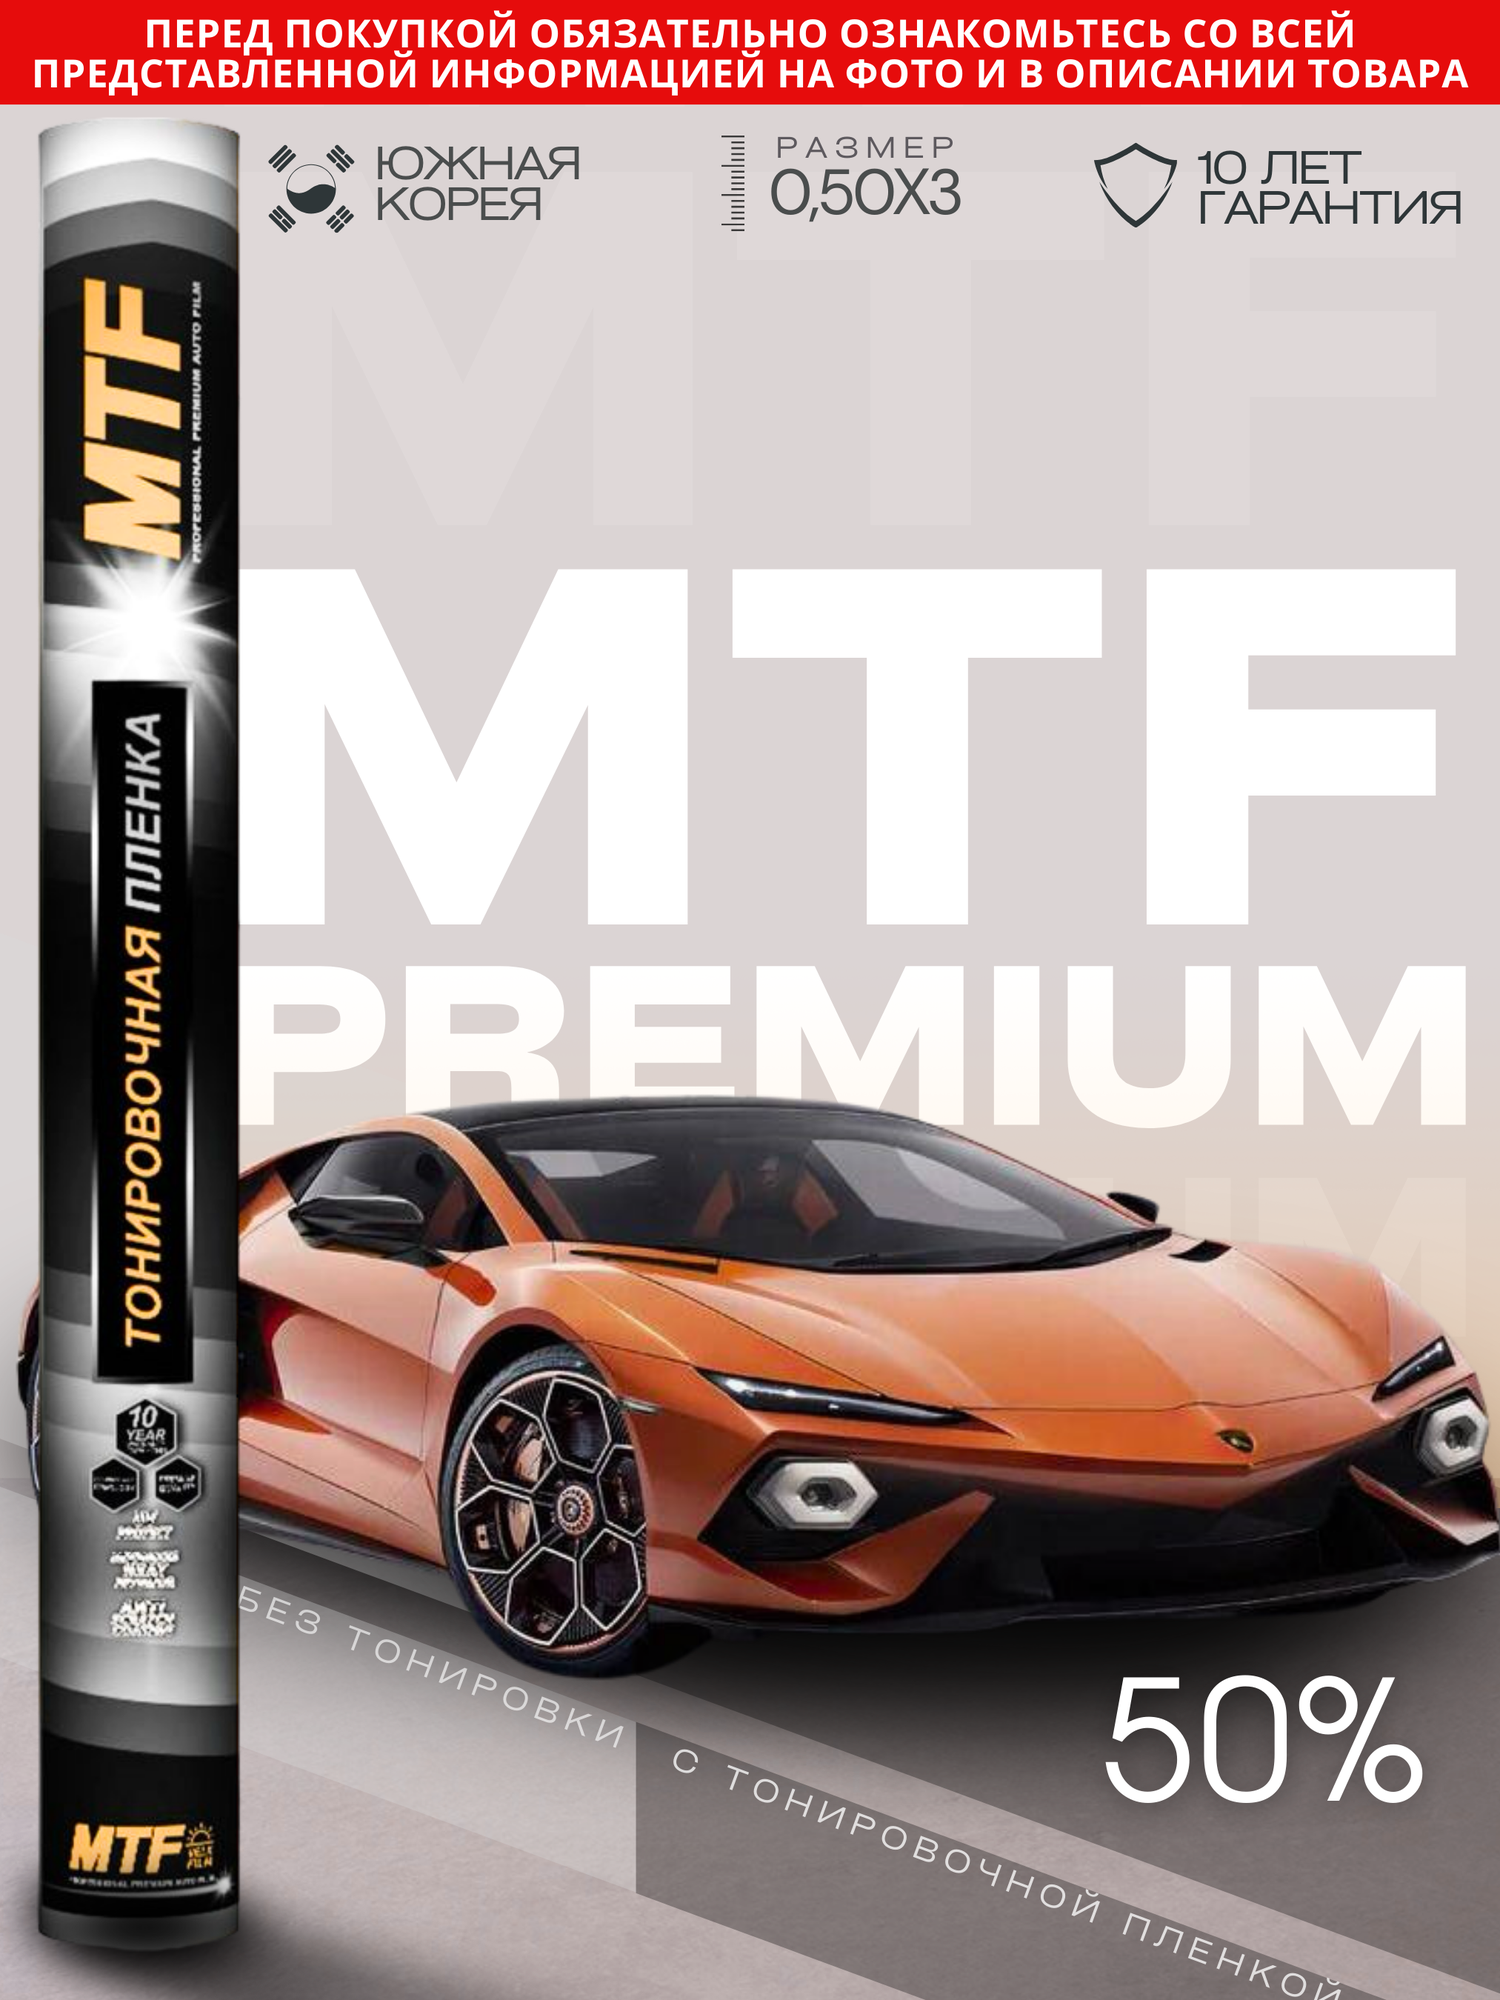 Пленка тонировочная "MTF Original" в тубе "Premium" 50% Сharcol (0.5м х 3м)